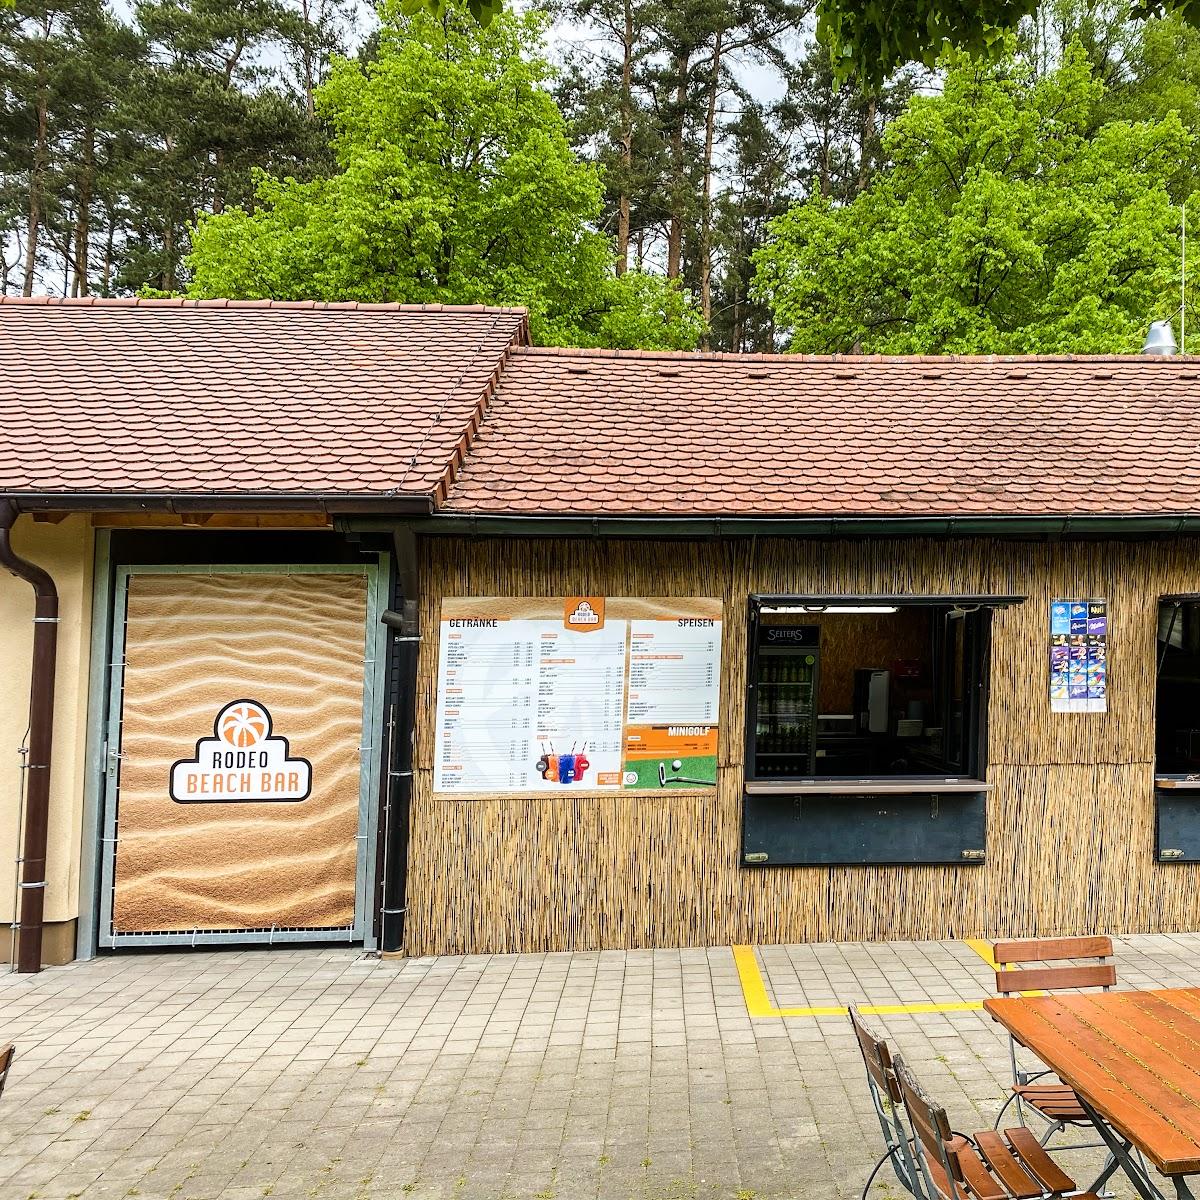 Restaurant "RODEO BEACH BAR am Naturbad" in Postbauer-Heng